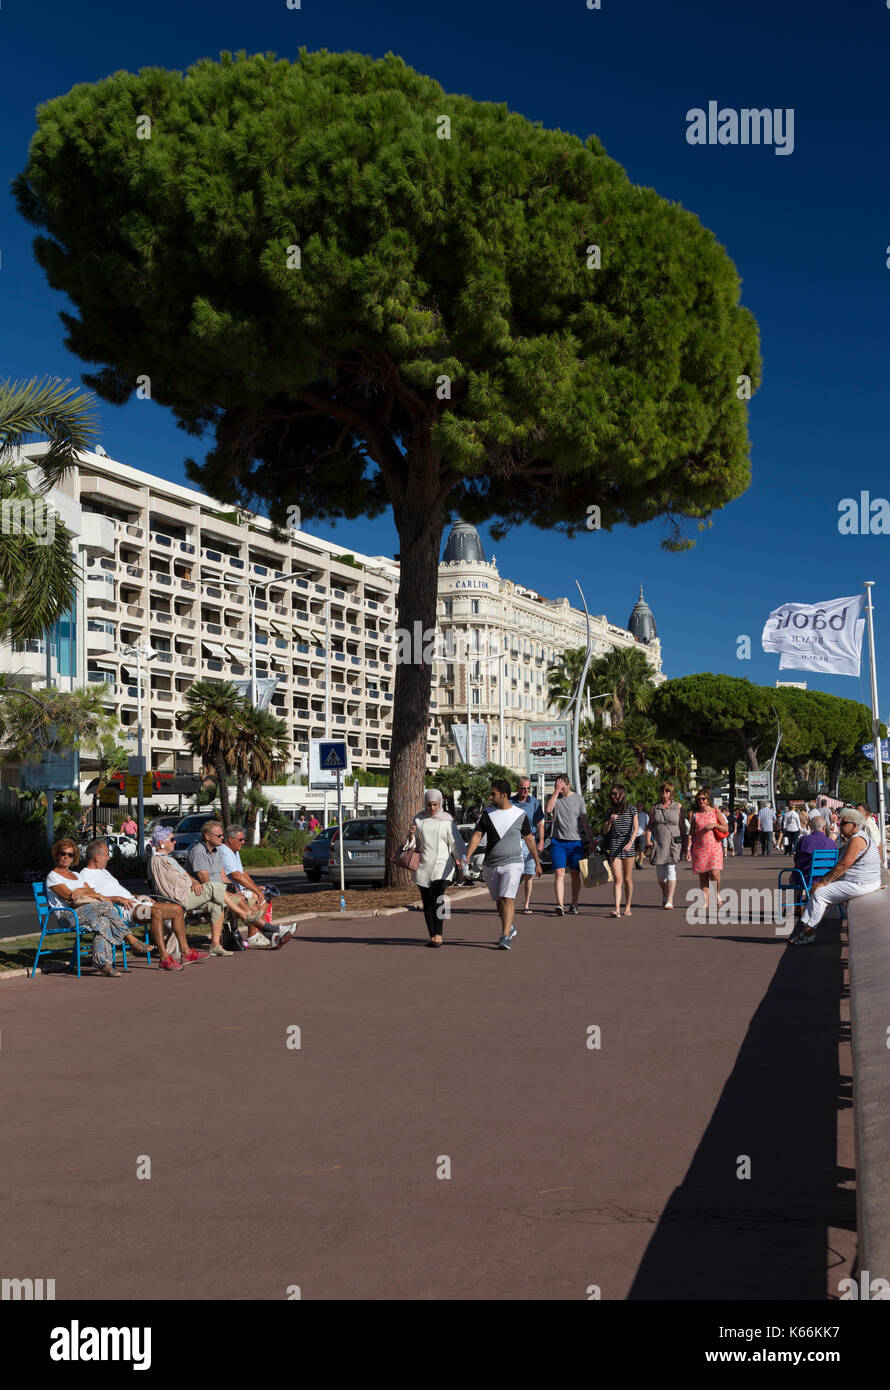 The promenade along Boulevard de la Croisette, Cannes, France Stock Photo